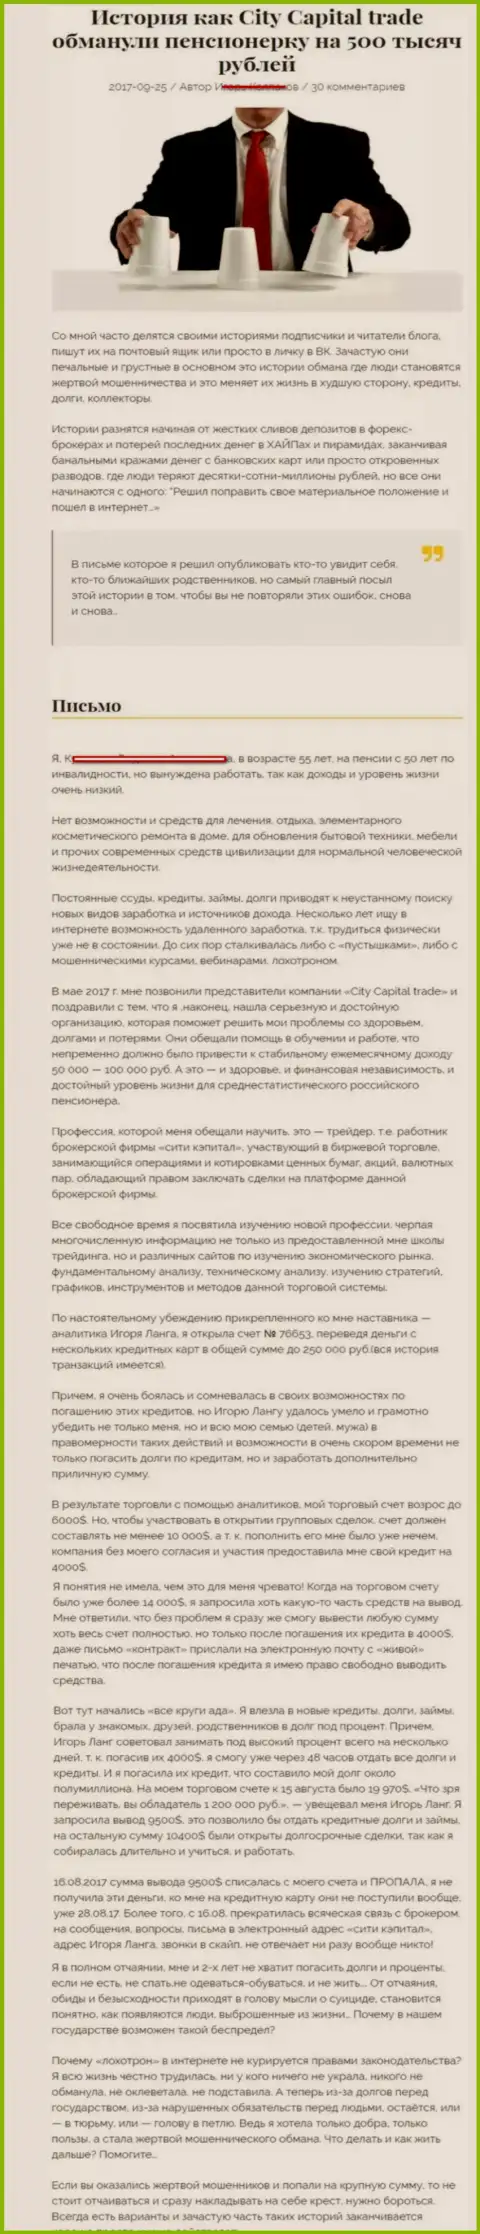 CityCapital кинули клиентку на пенсии - инвалида на пятьсот тыс. российских рублей - ВОРЫ !!!